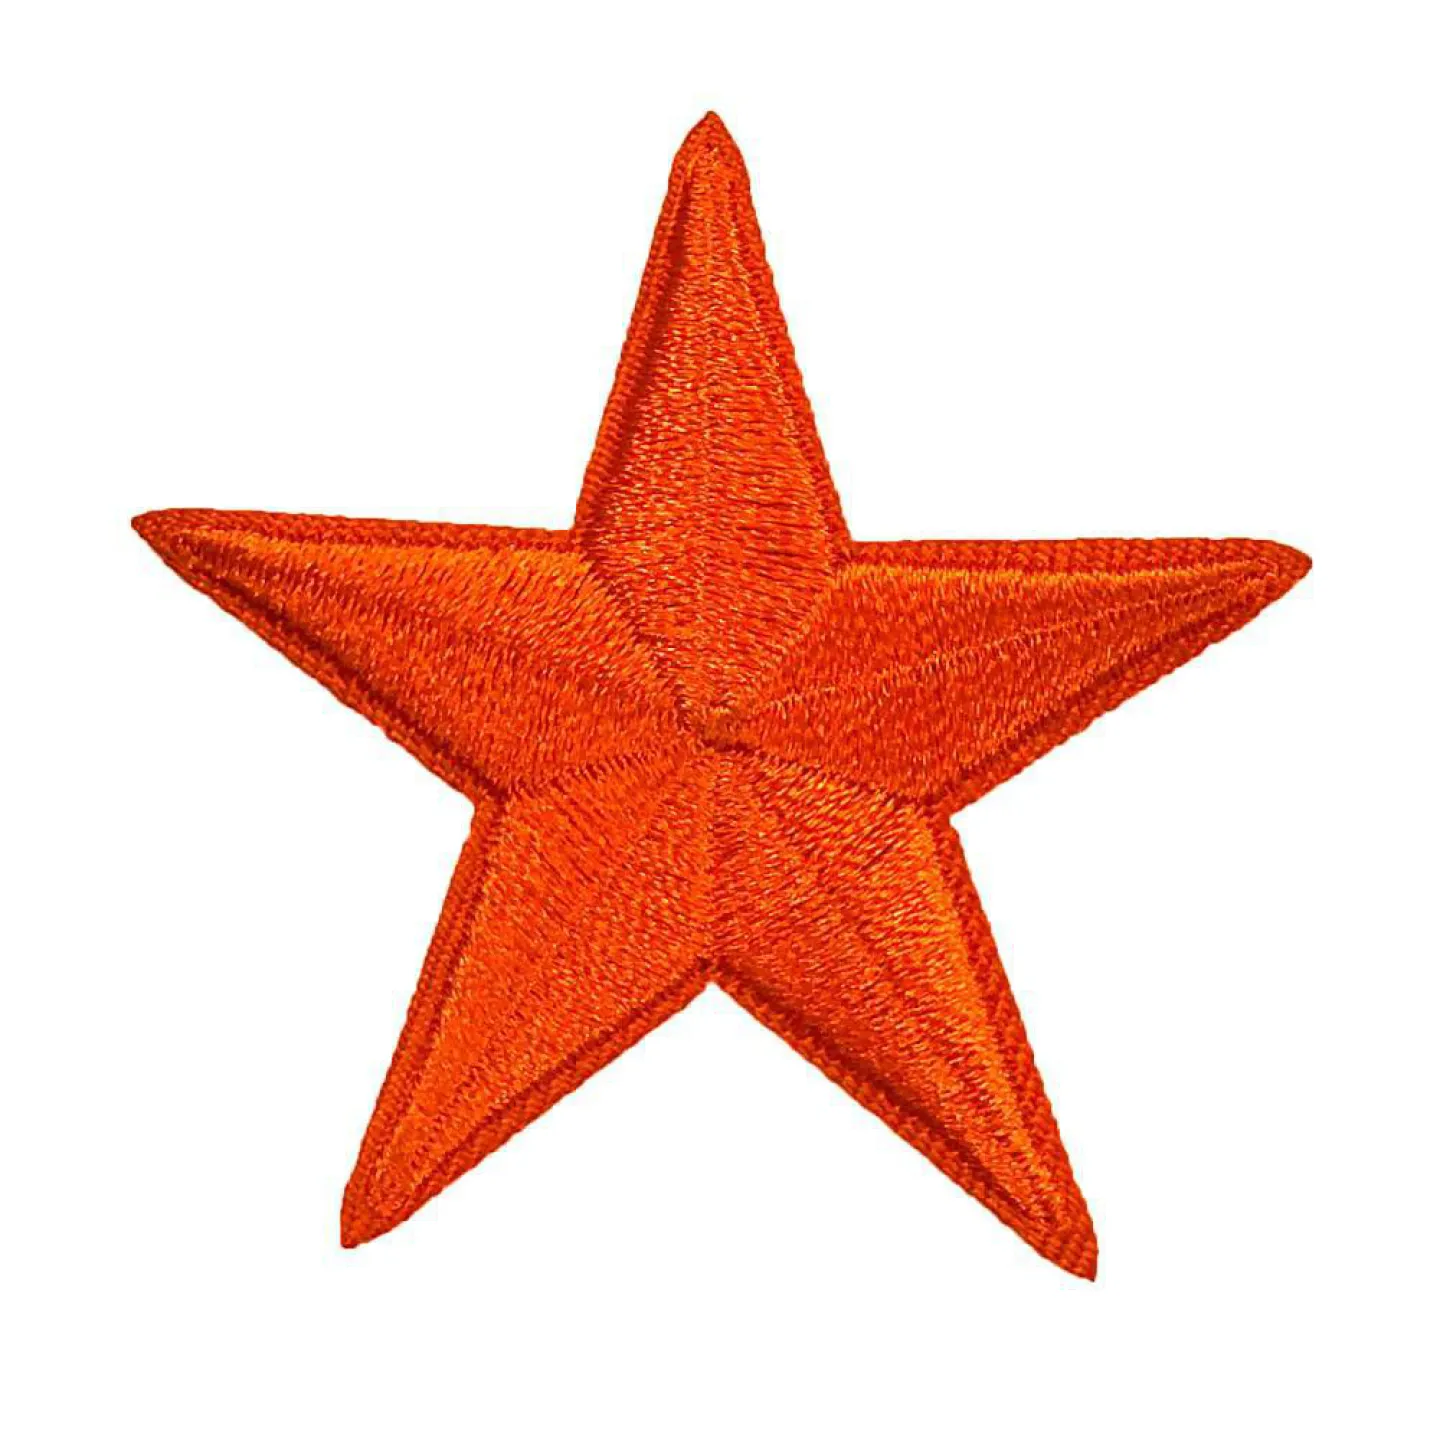 Kielegat embleem - Oranje ster.